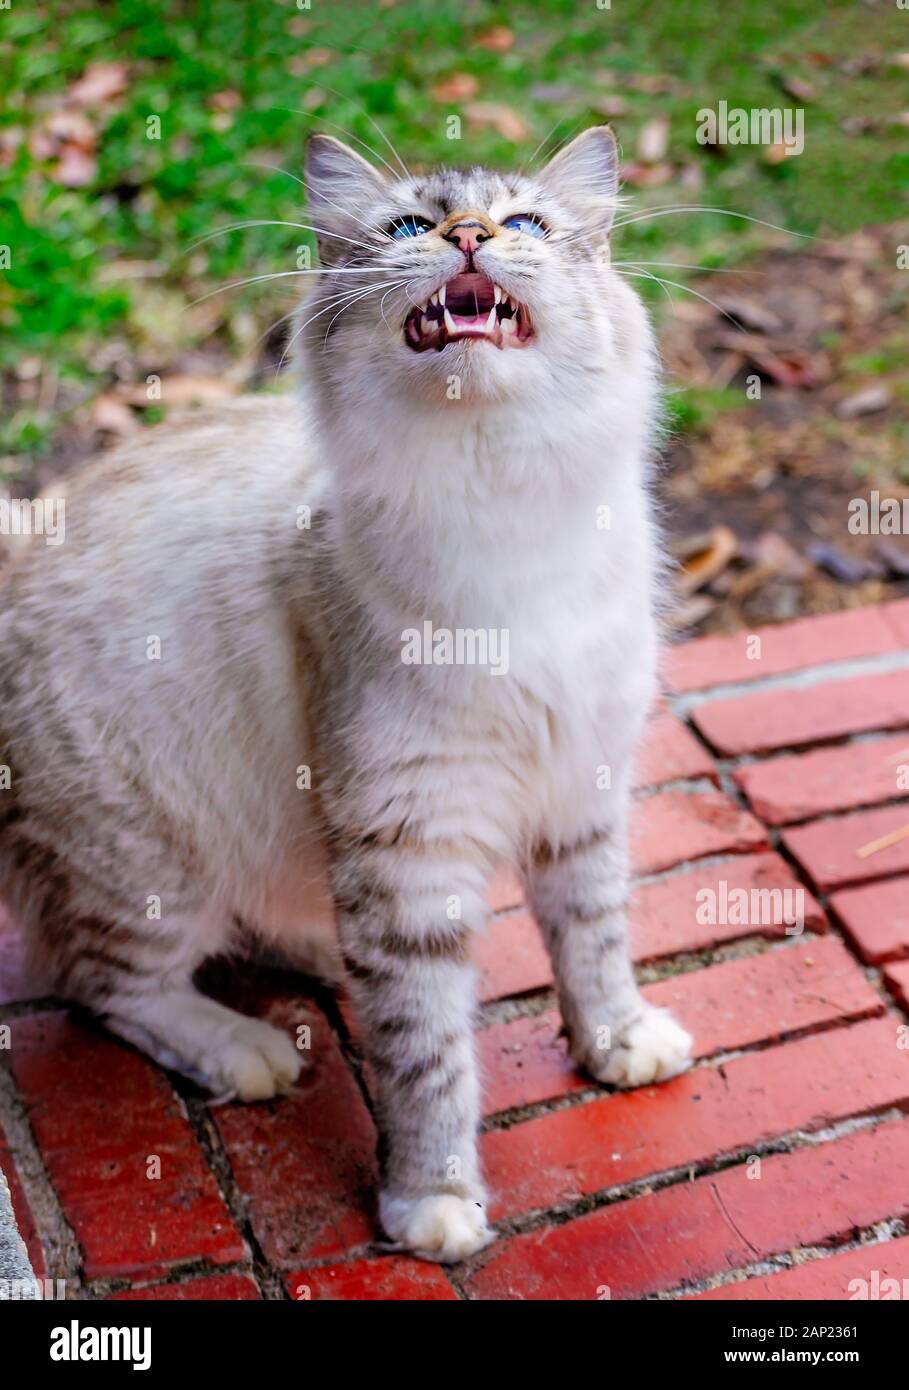 Un poil long silver tabby cat est assis sur une brique l'étape, à la recherche et meowing, 13 janvier 2020, dans l'Alabama, Coden. Banque D'Images